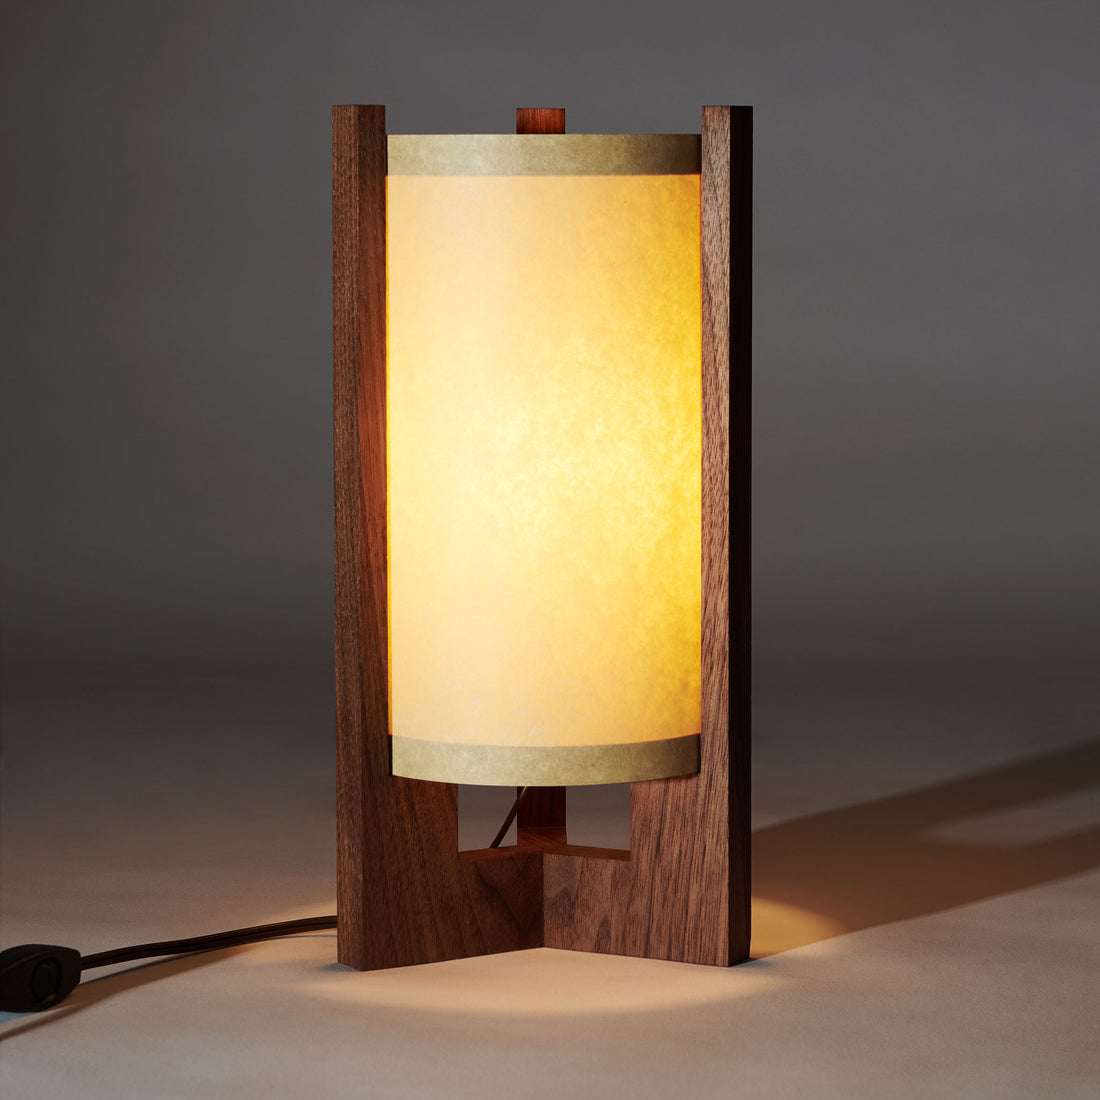 Japanese Mid Century Walnut Table Lamp that is illuminated